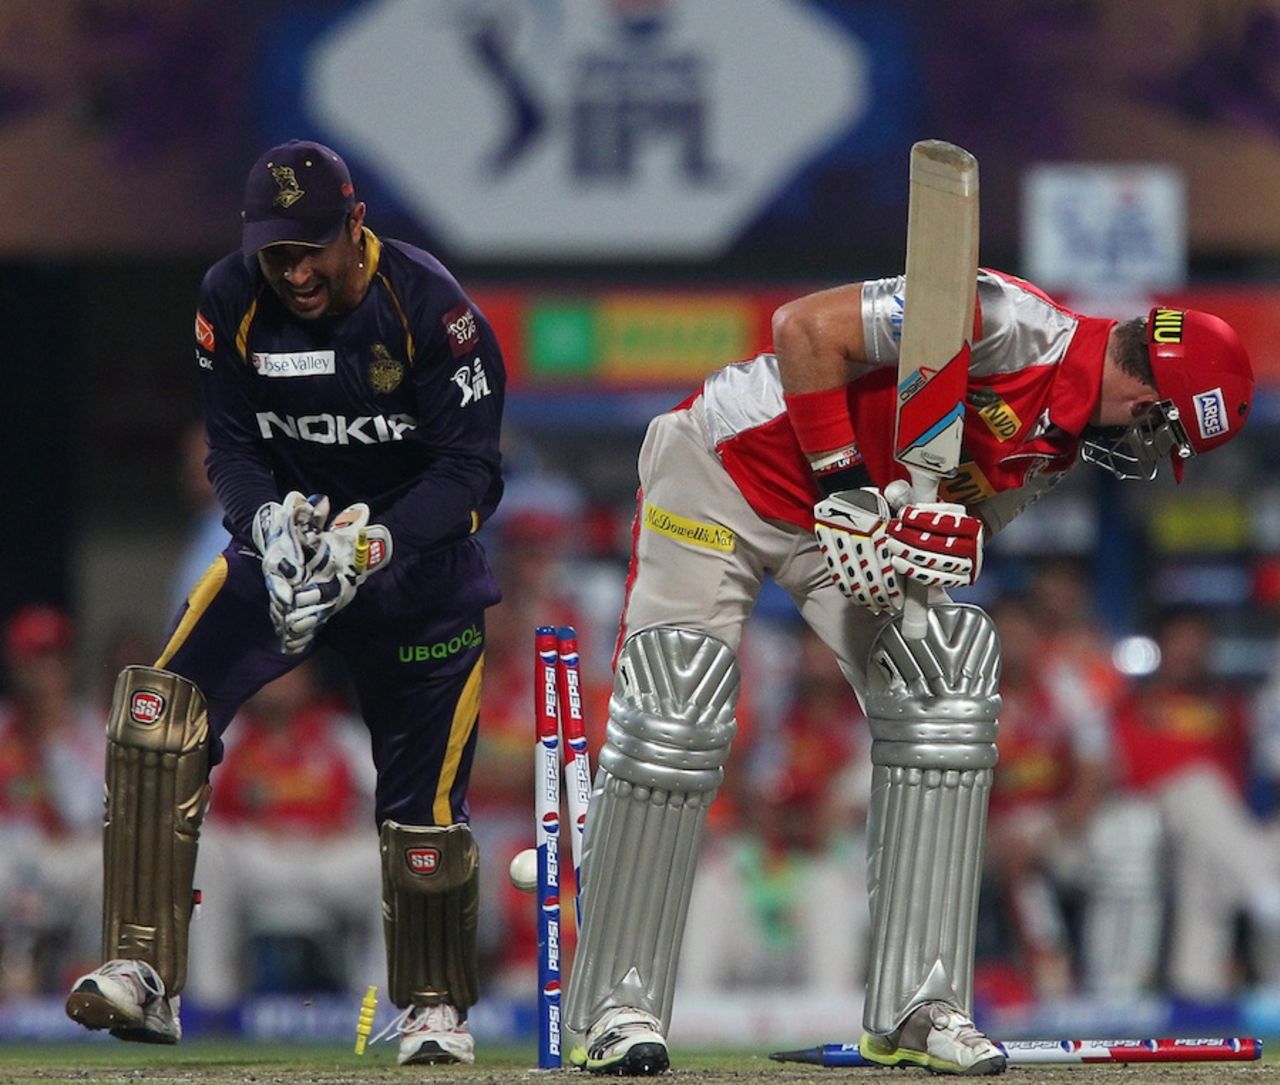 David Miller was bowled for 10, Kolkata Knight Riders v Kings XI Punjab, IPL, Kolkata, April 26, 2013